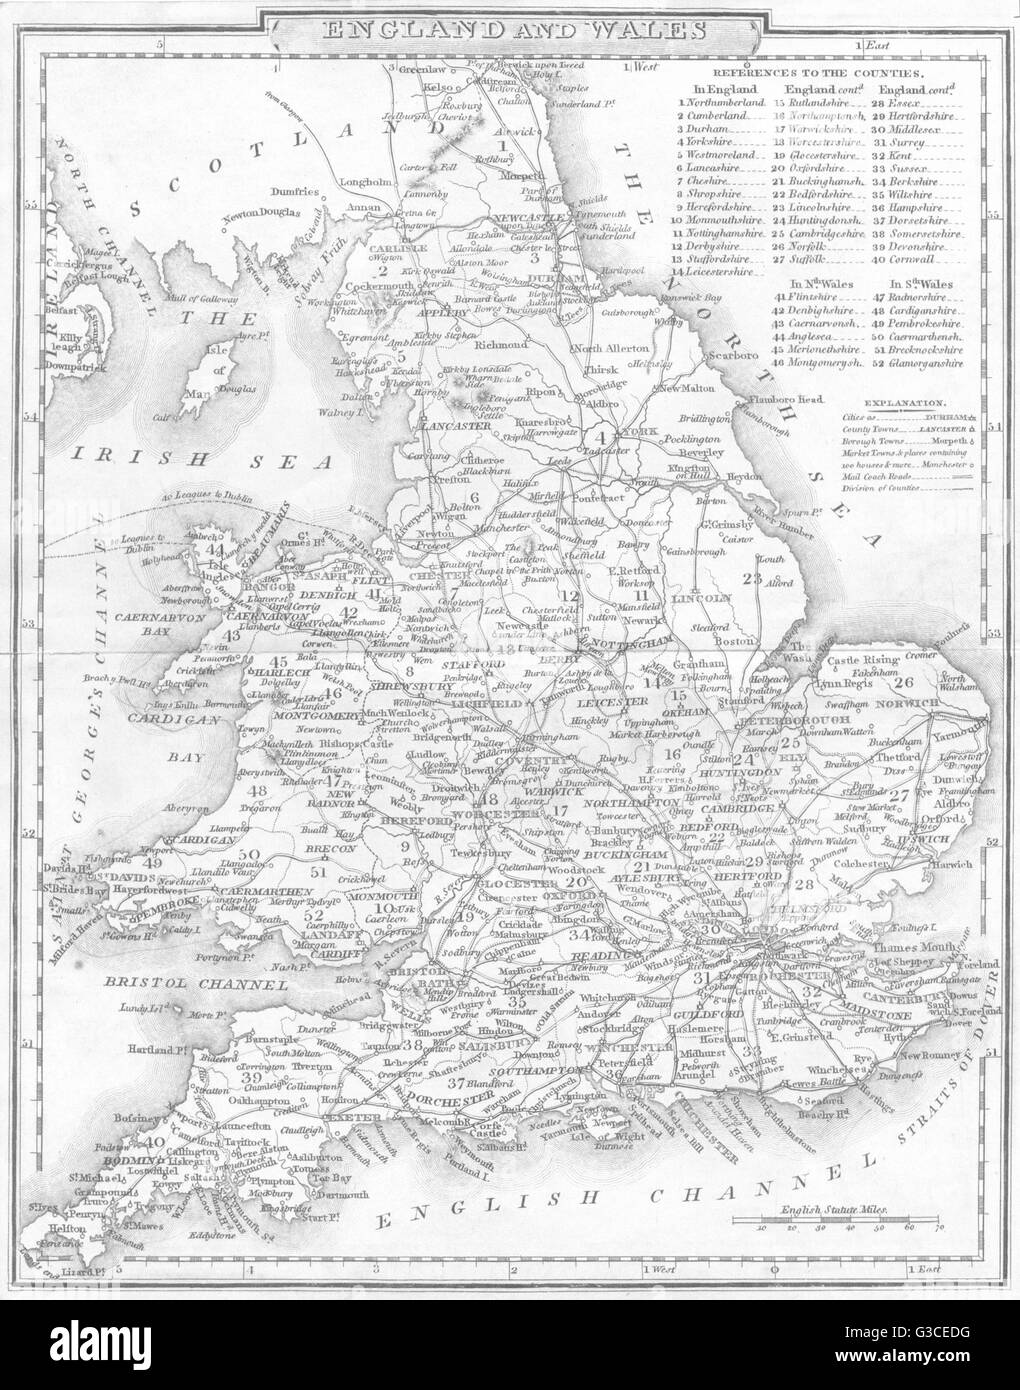 Royaume-uni : Angleterre et Pays de Galles. DUGDALE, 1845 carte antique Banque D'Images